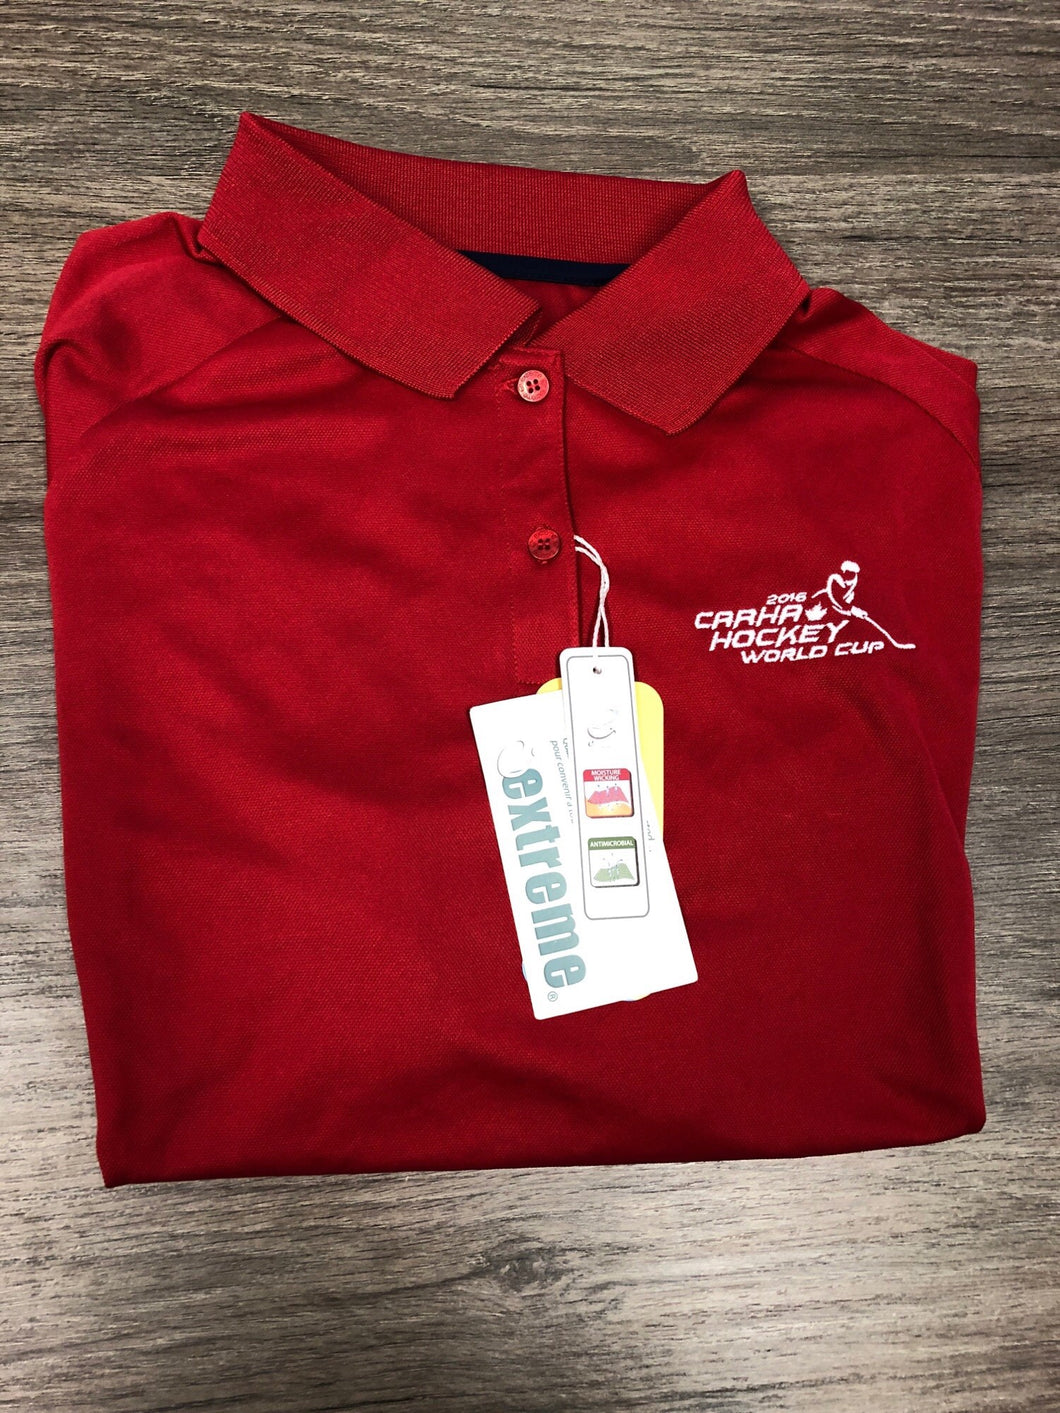 Women's Red Golf Shirt - 2016 – CARHA 